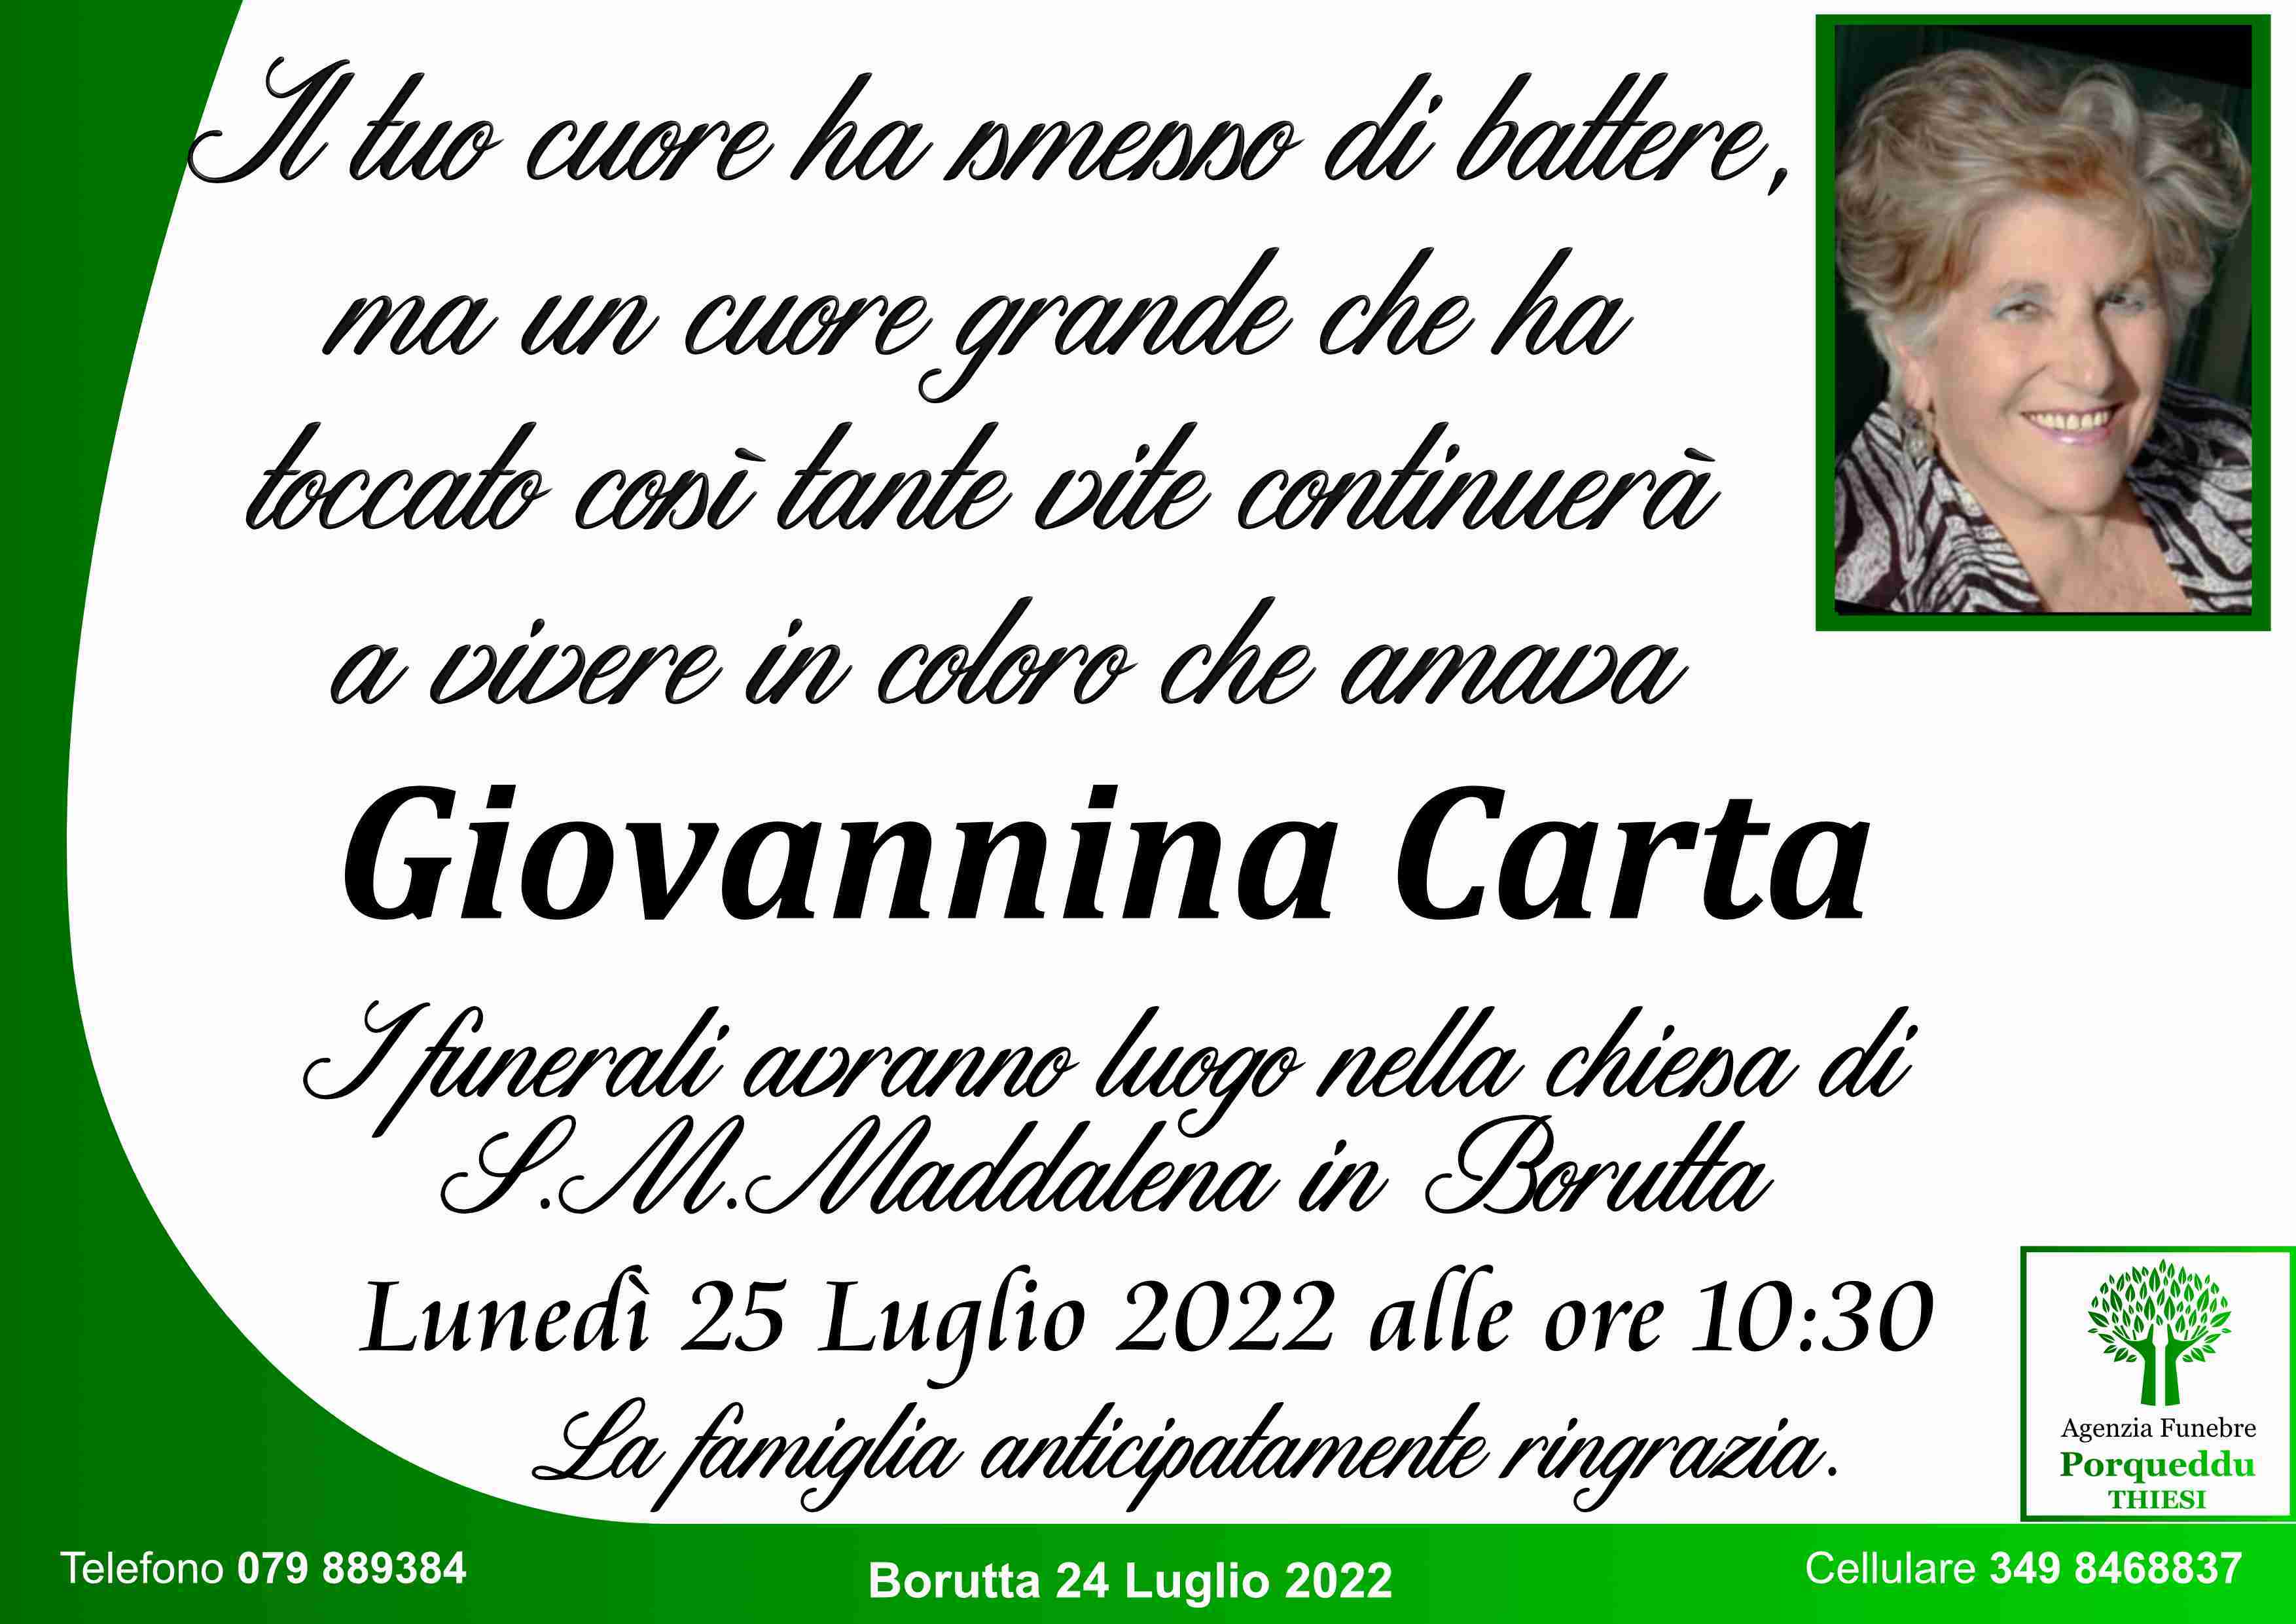 Giovannina Carta